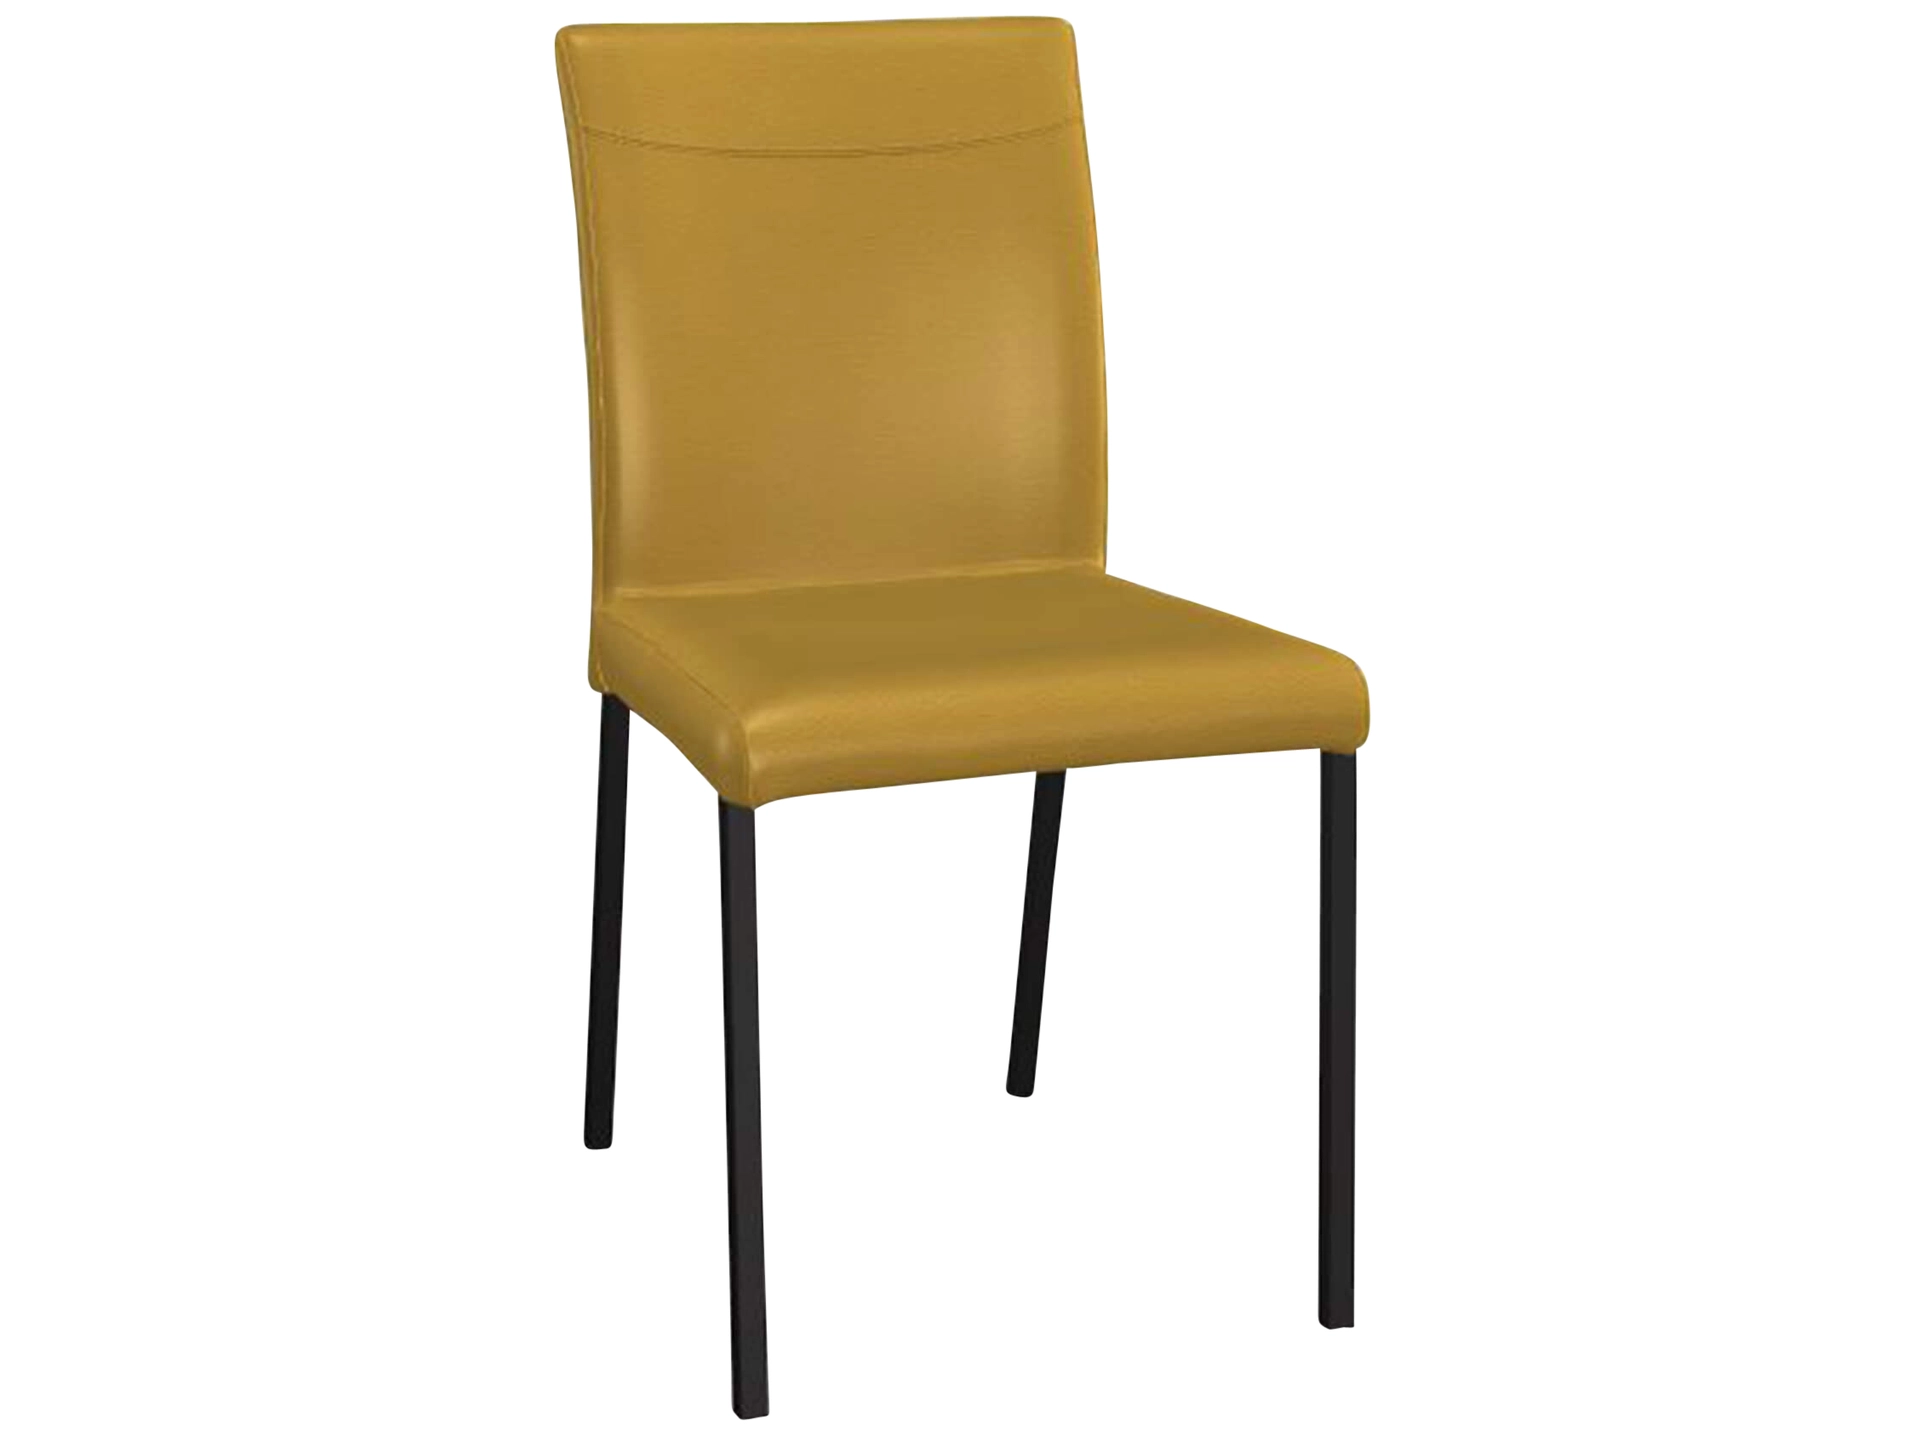 Stuhl Leicht Premium Trendstühle / Farbe: Lemon / Material: Leder